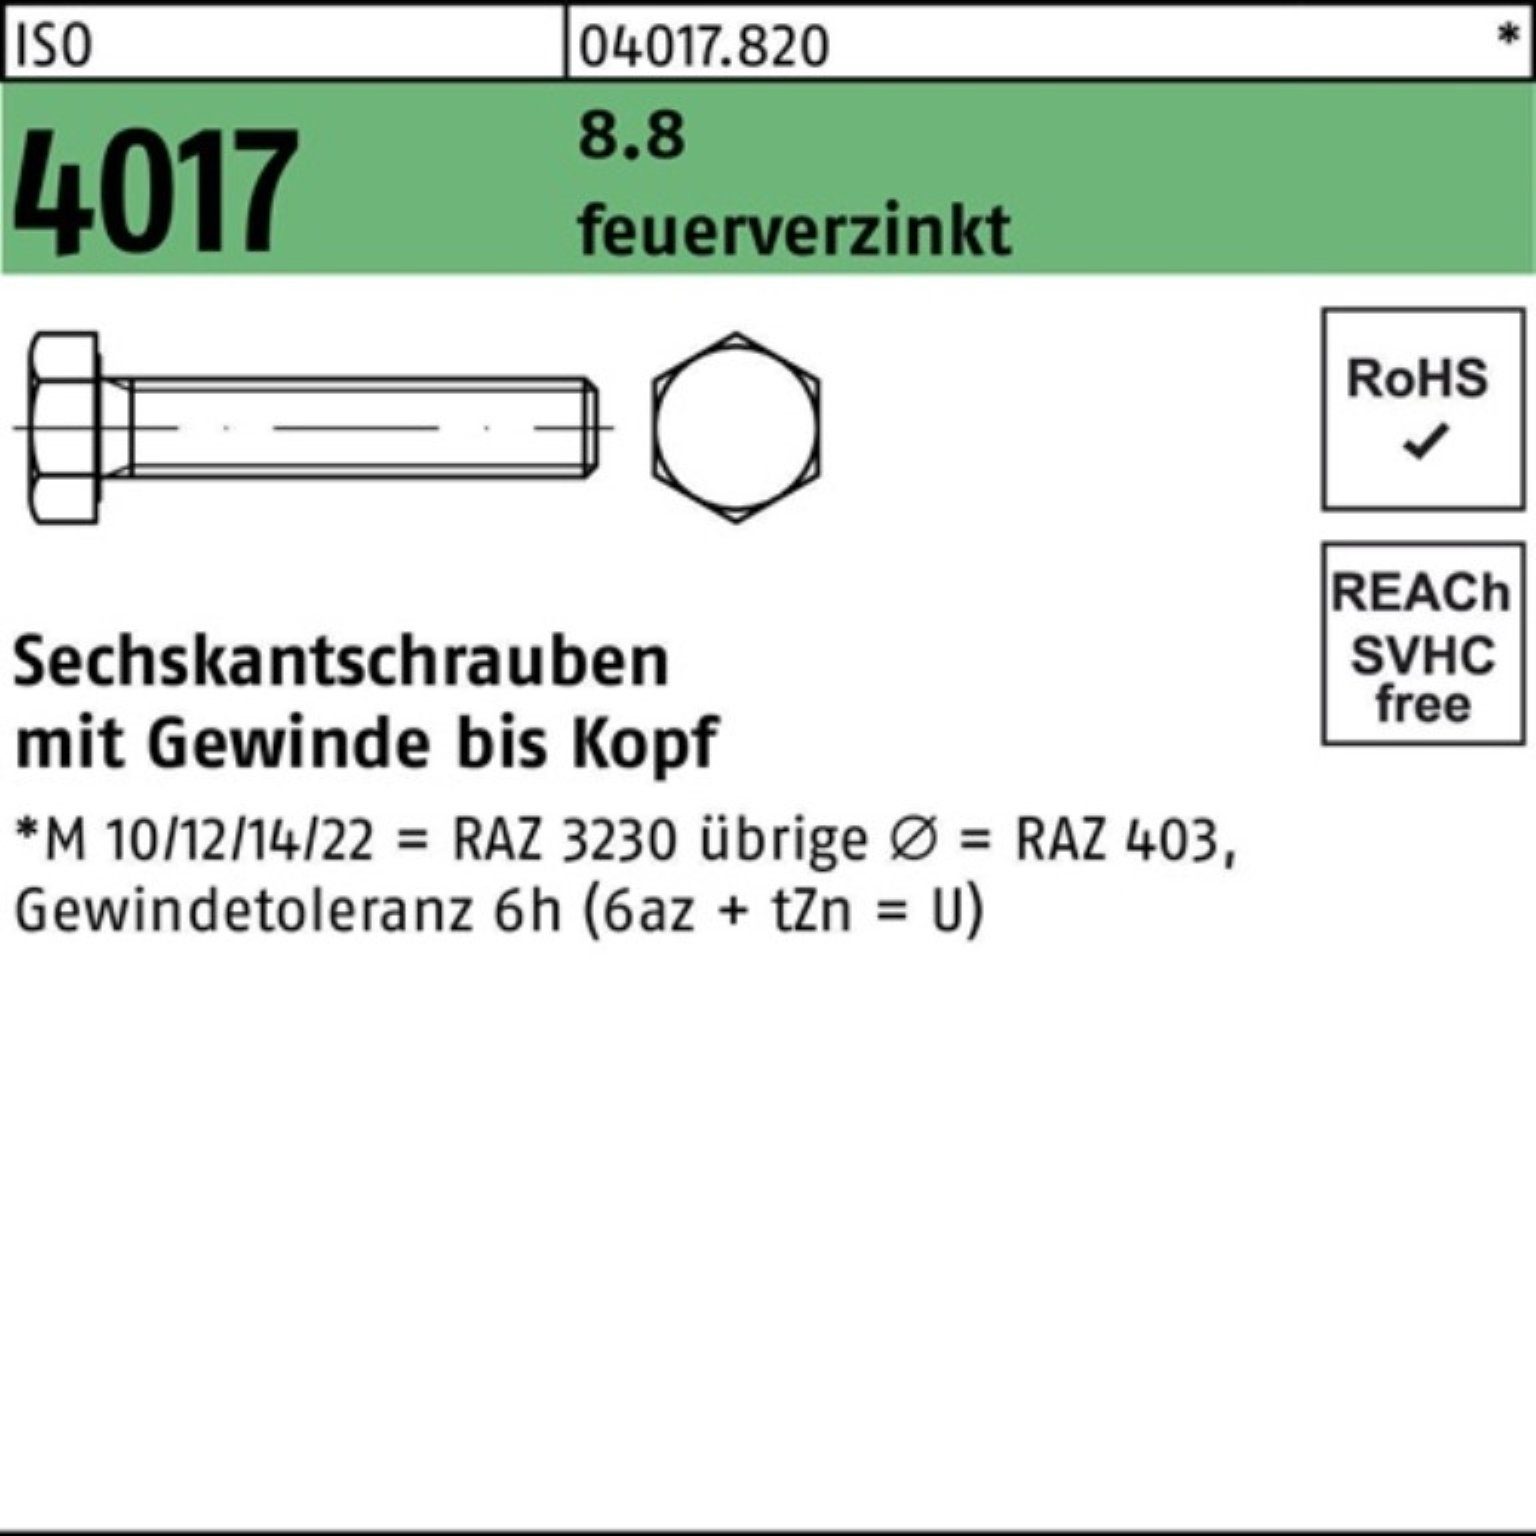 Bufab Sechskantschraube 100er Pack Sechskantschraube ISO 4017 VG M12x 35 8.8 feuerverz. 100 St